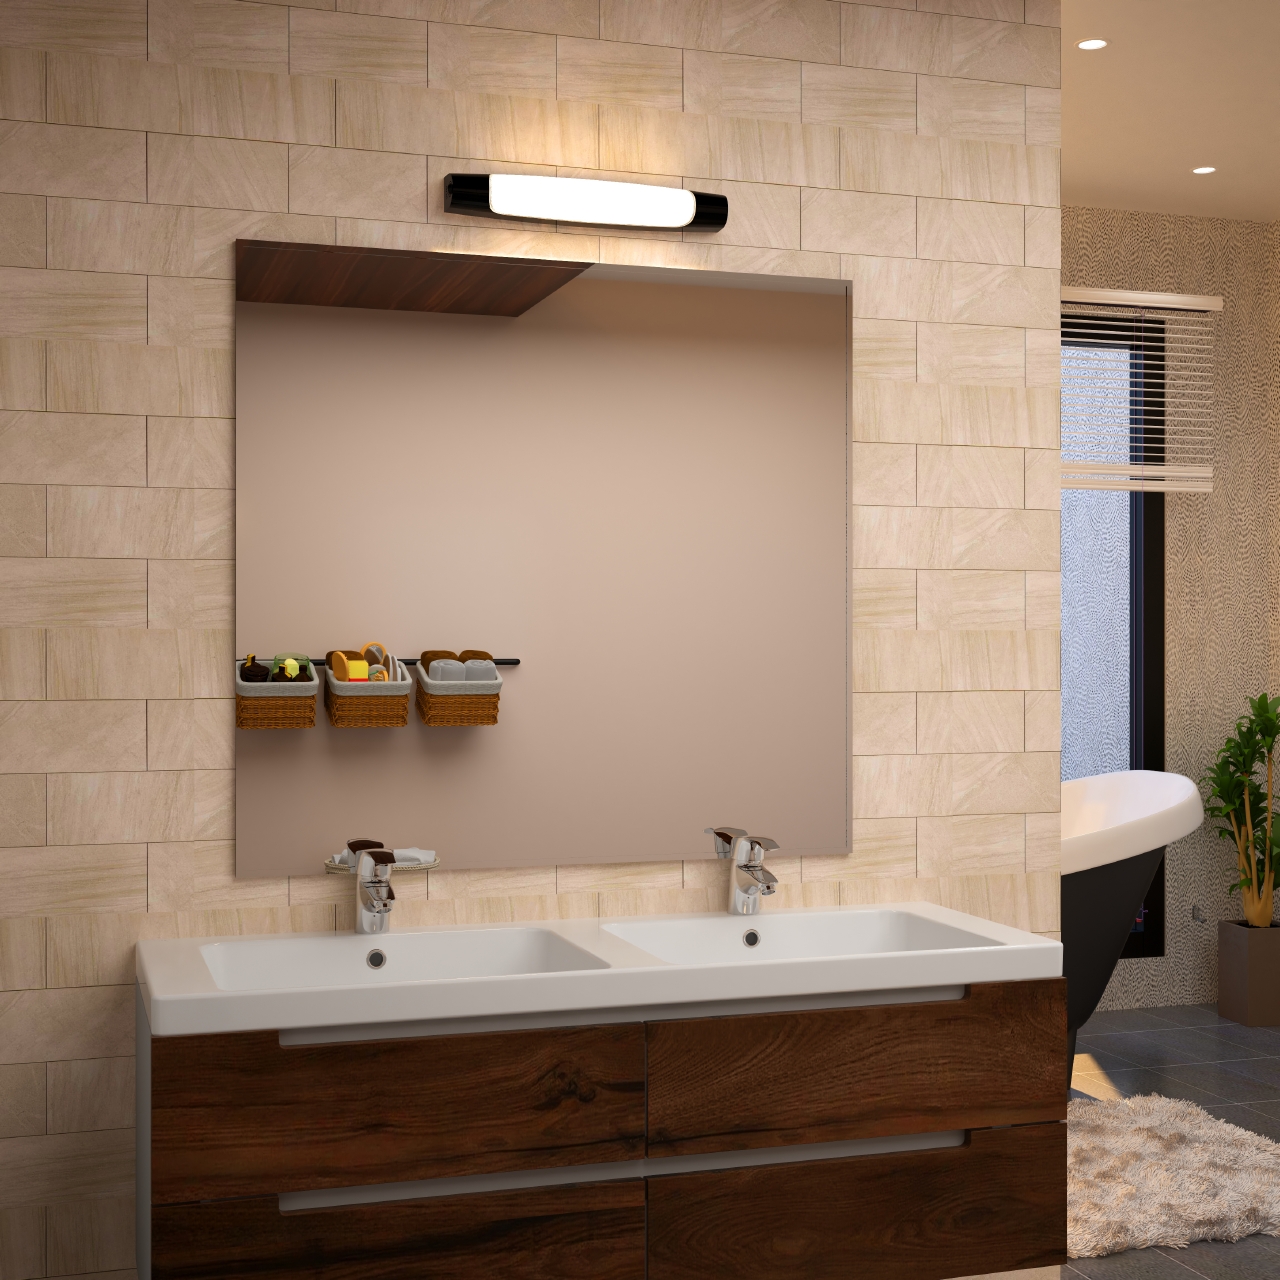 Reglette salle de bain ip44 - Achat éclairages étanches